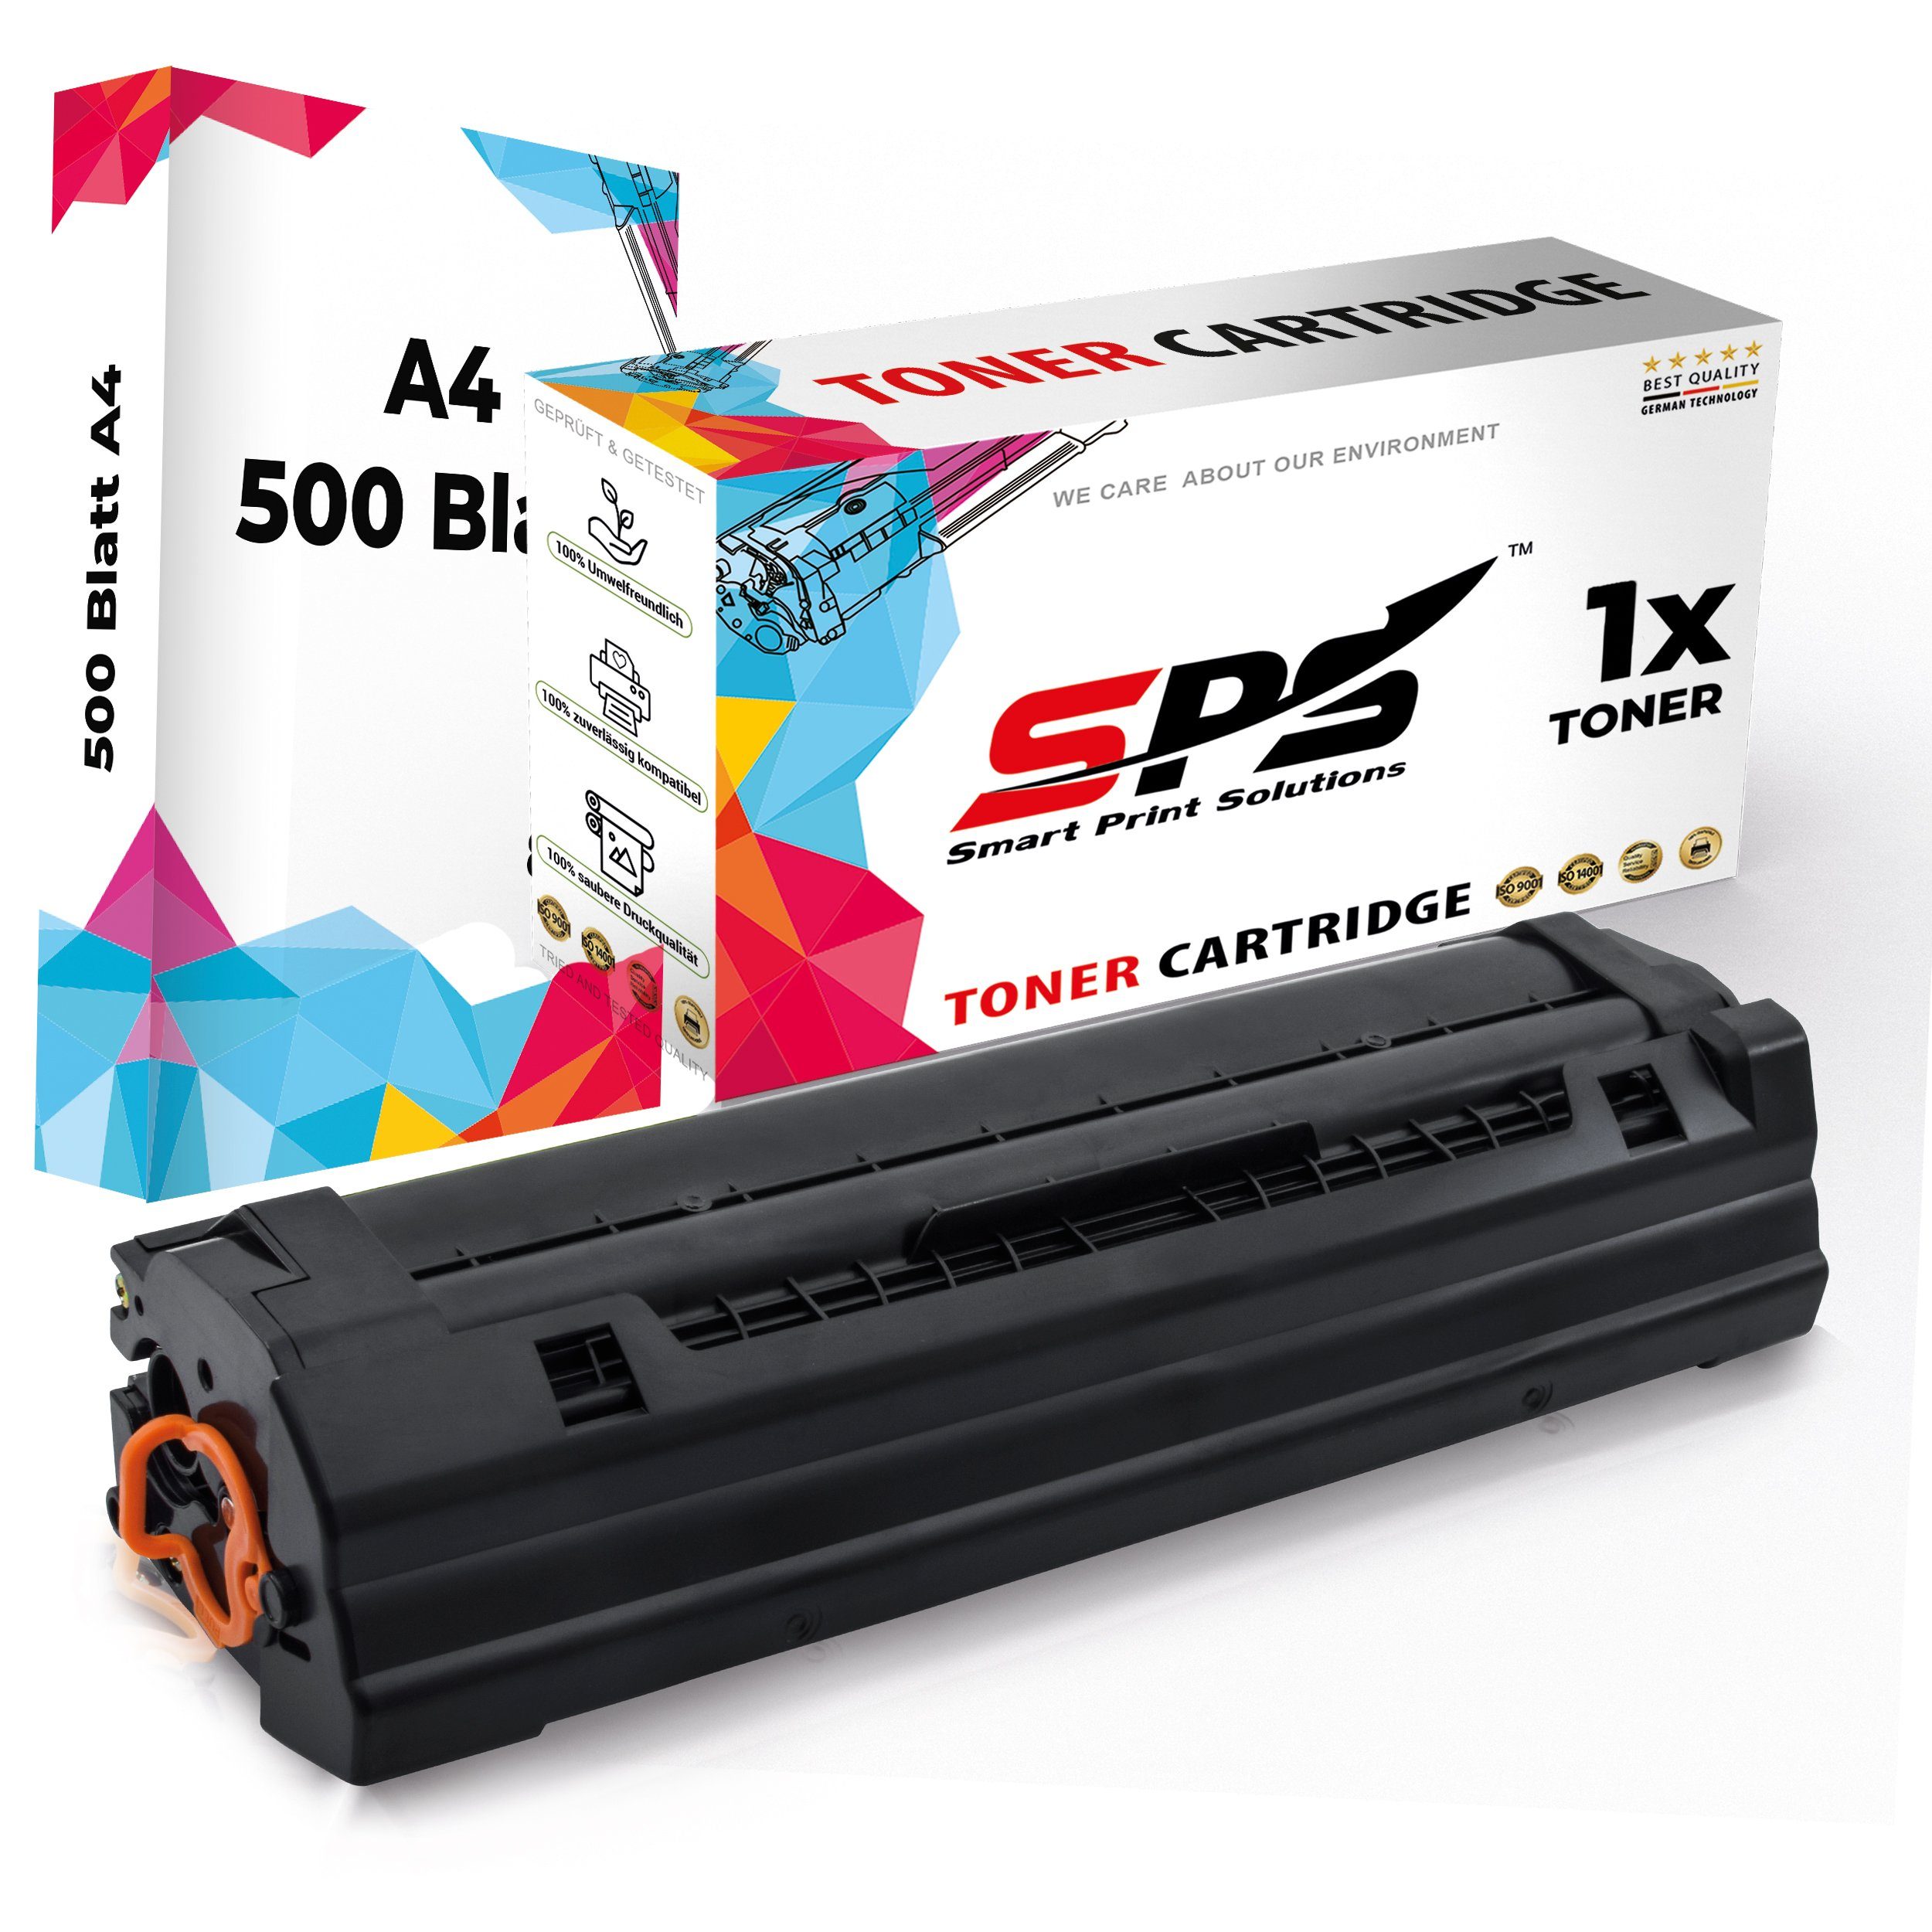 SPS Tonerkartusche Kompatibel für Samsung Xpress SL-M2022 111L MLT-D1, (1er Pack + A4 Papier, 1x Schwarz Toner)